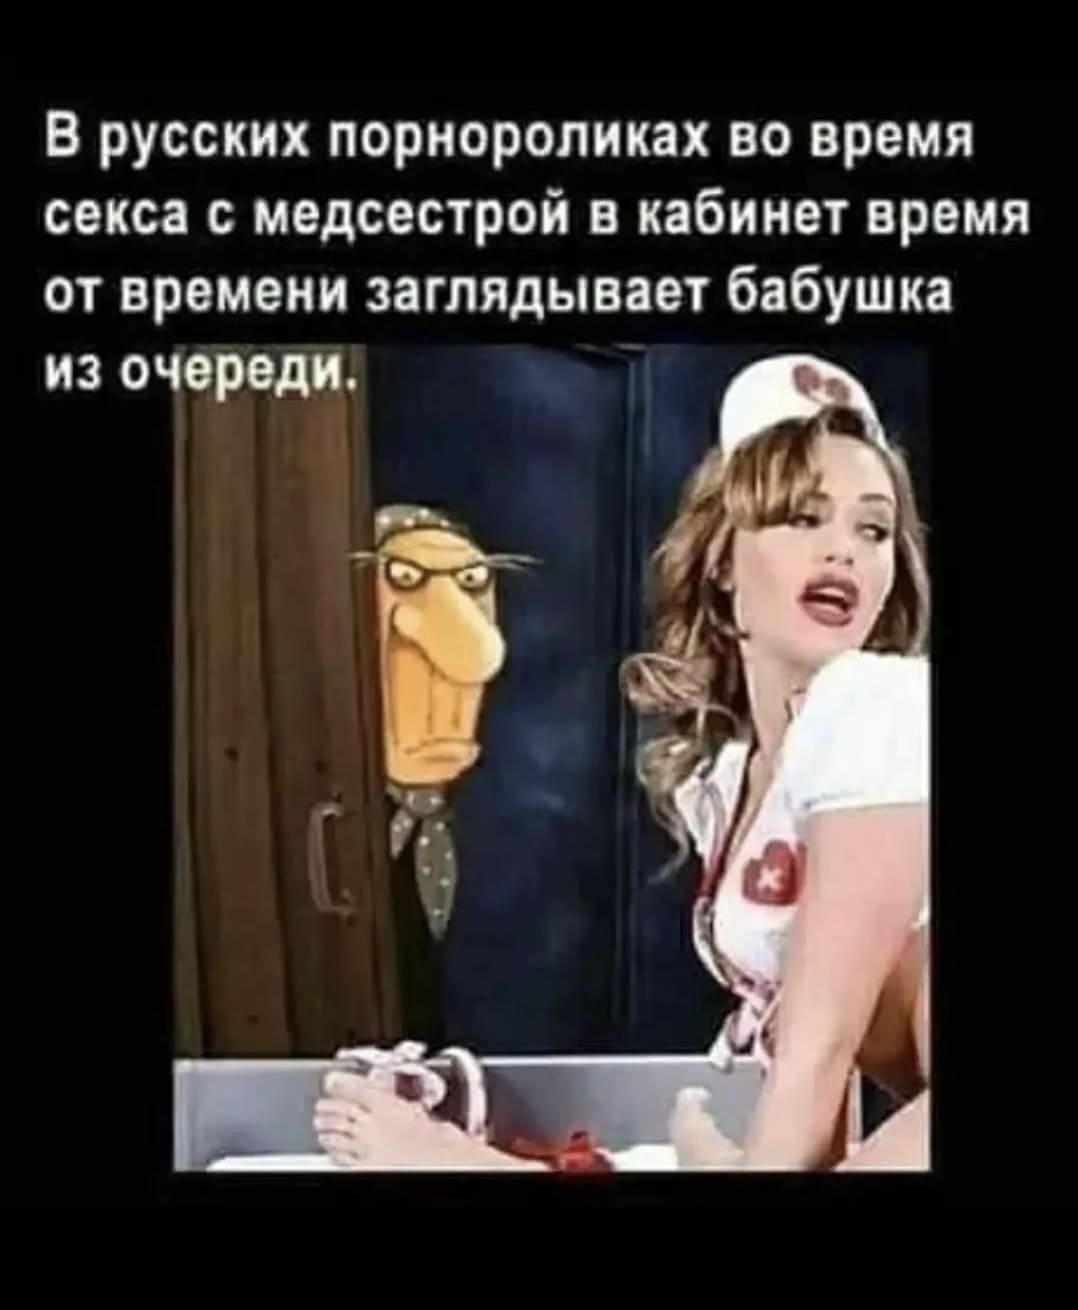 В русских пopнофильмах во время ceкса с медсестрой в кабинет время от времени заглядывает бабка из очереди.